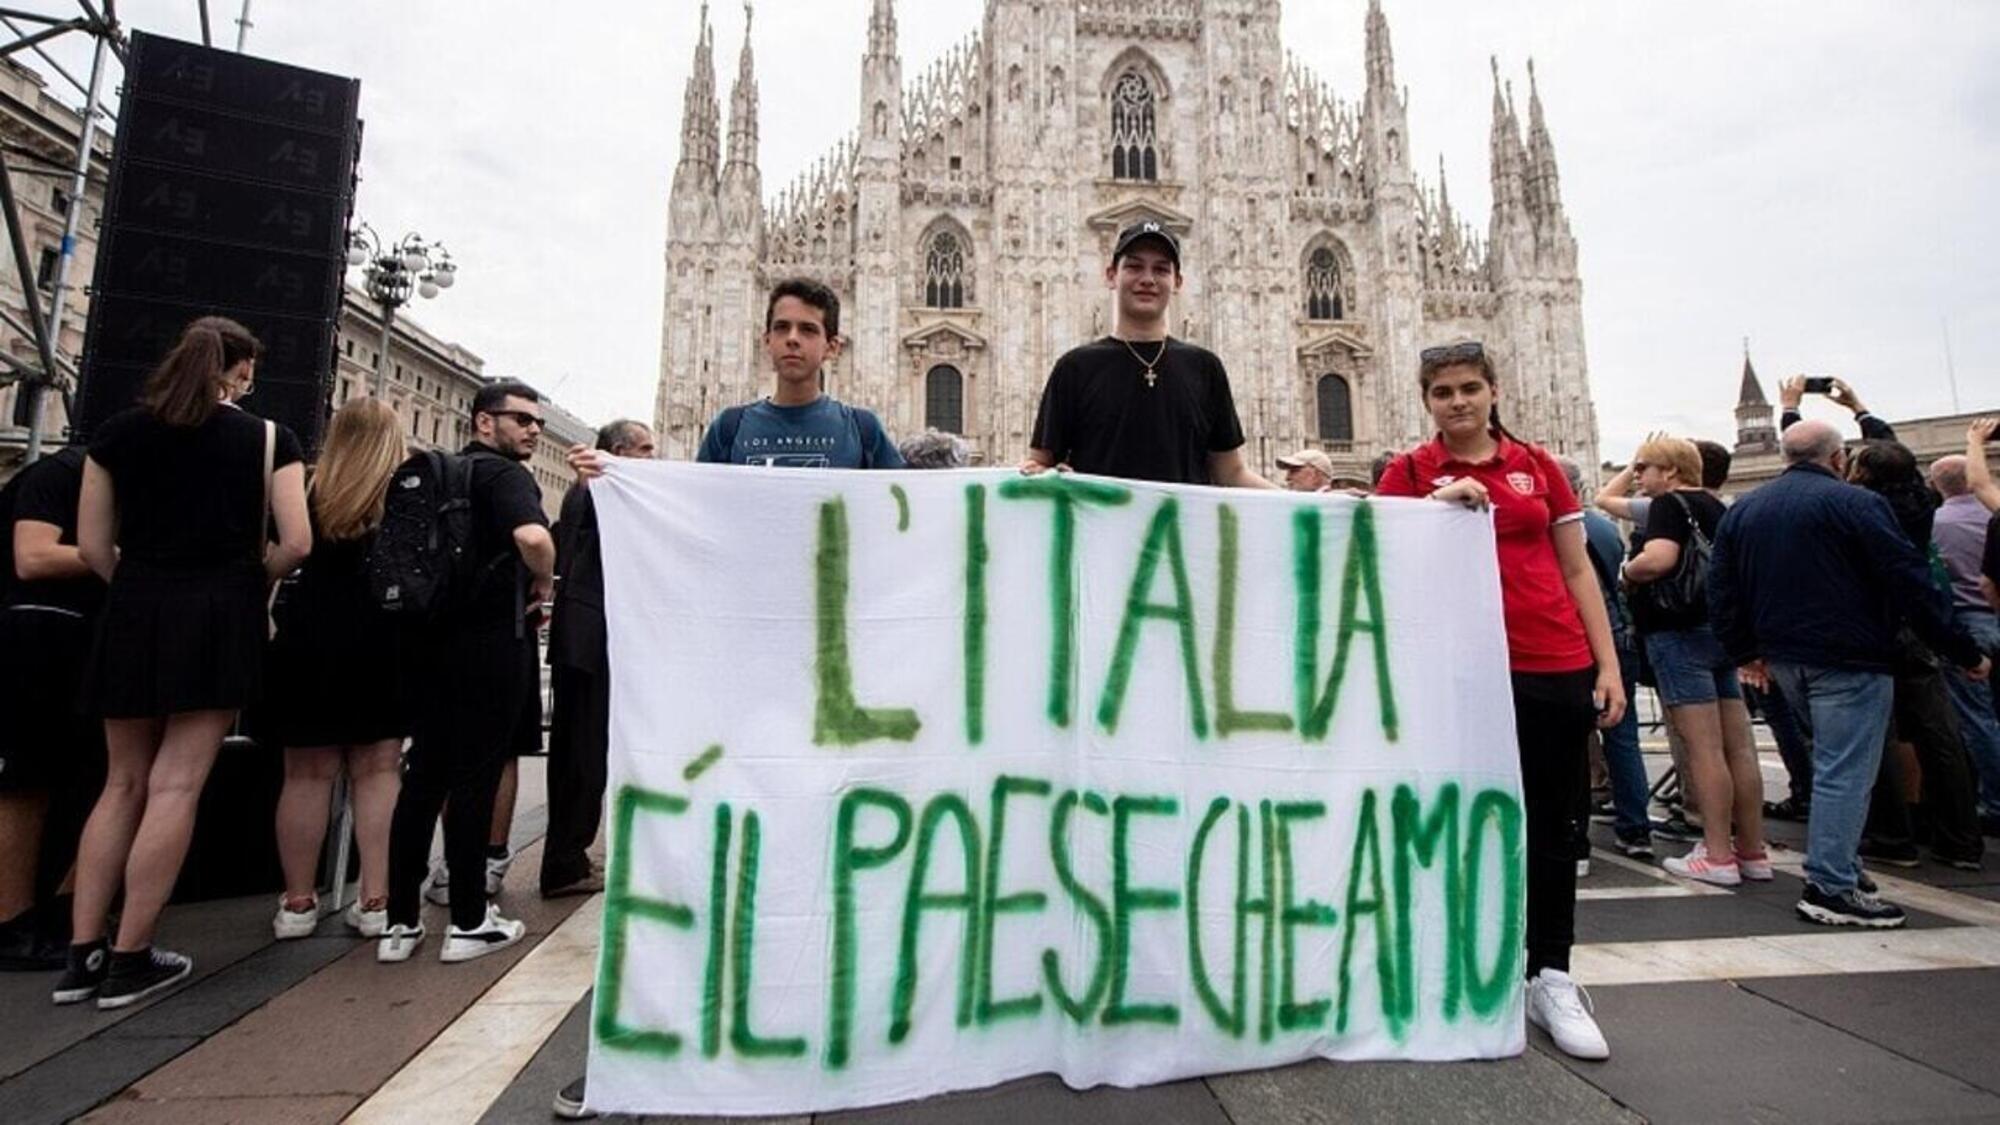 Giovani sostenitori di Silvio Berlusconi in piazza Duomo